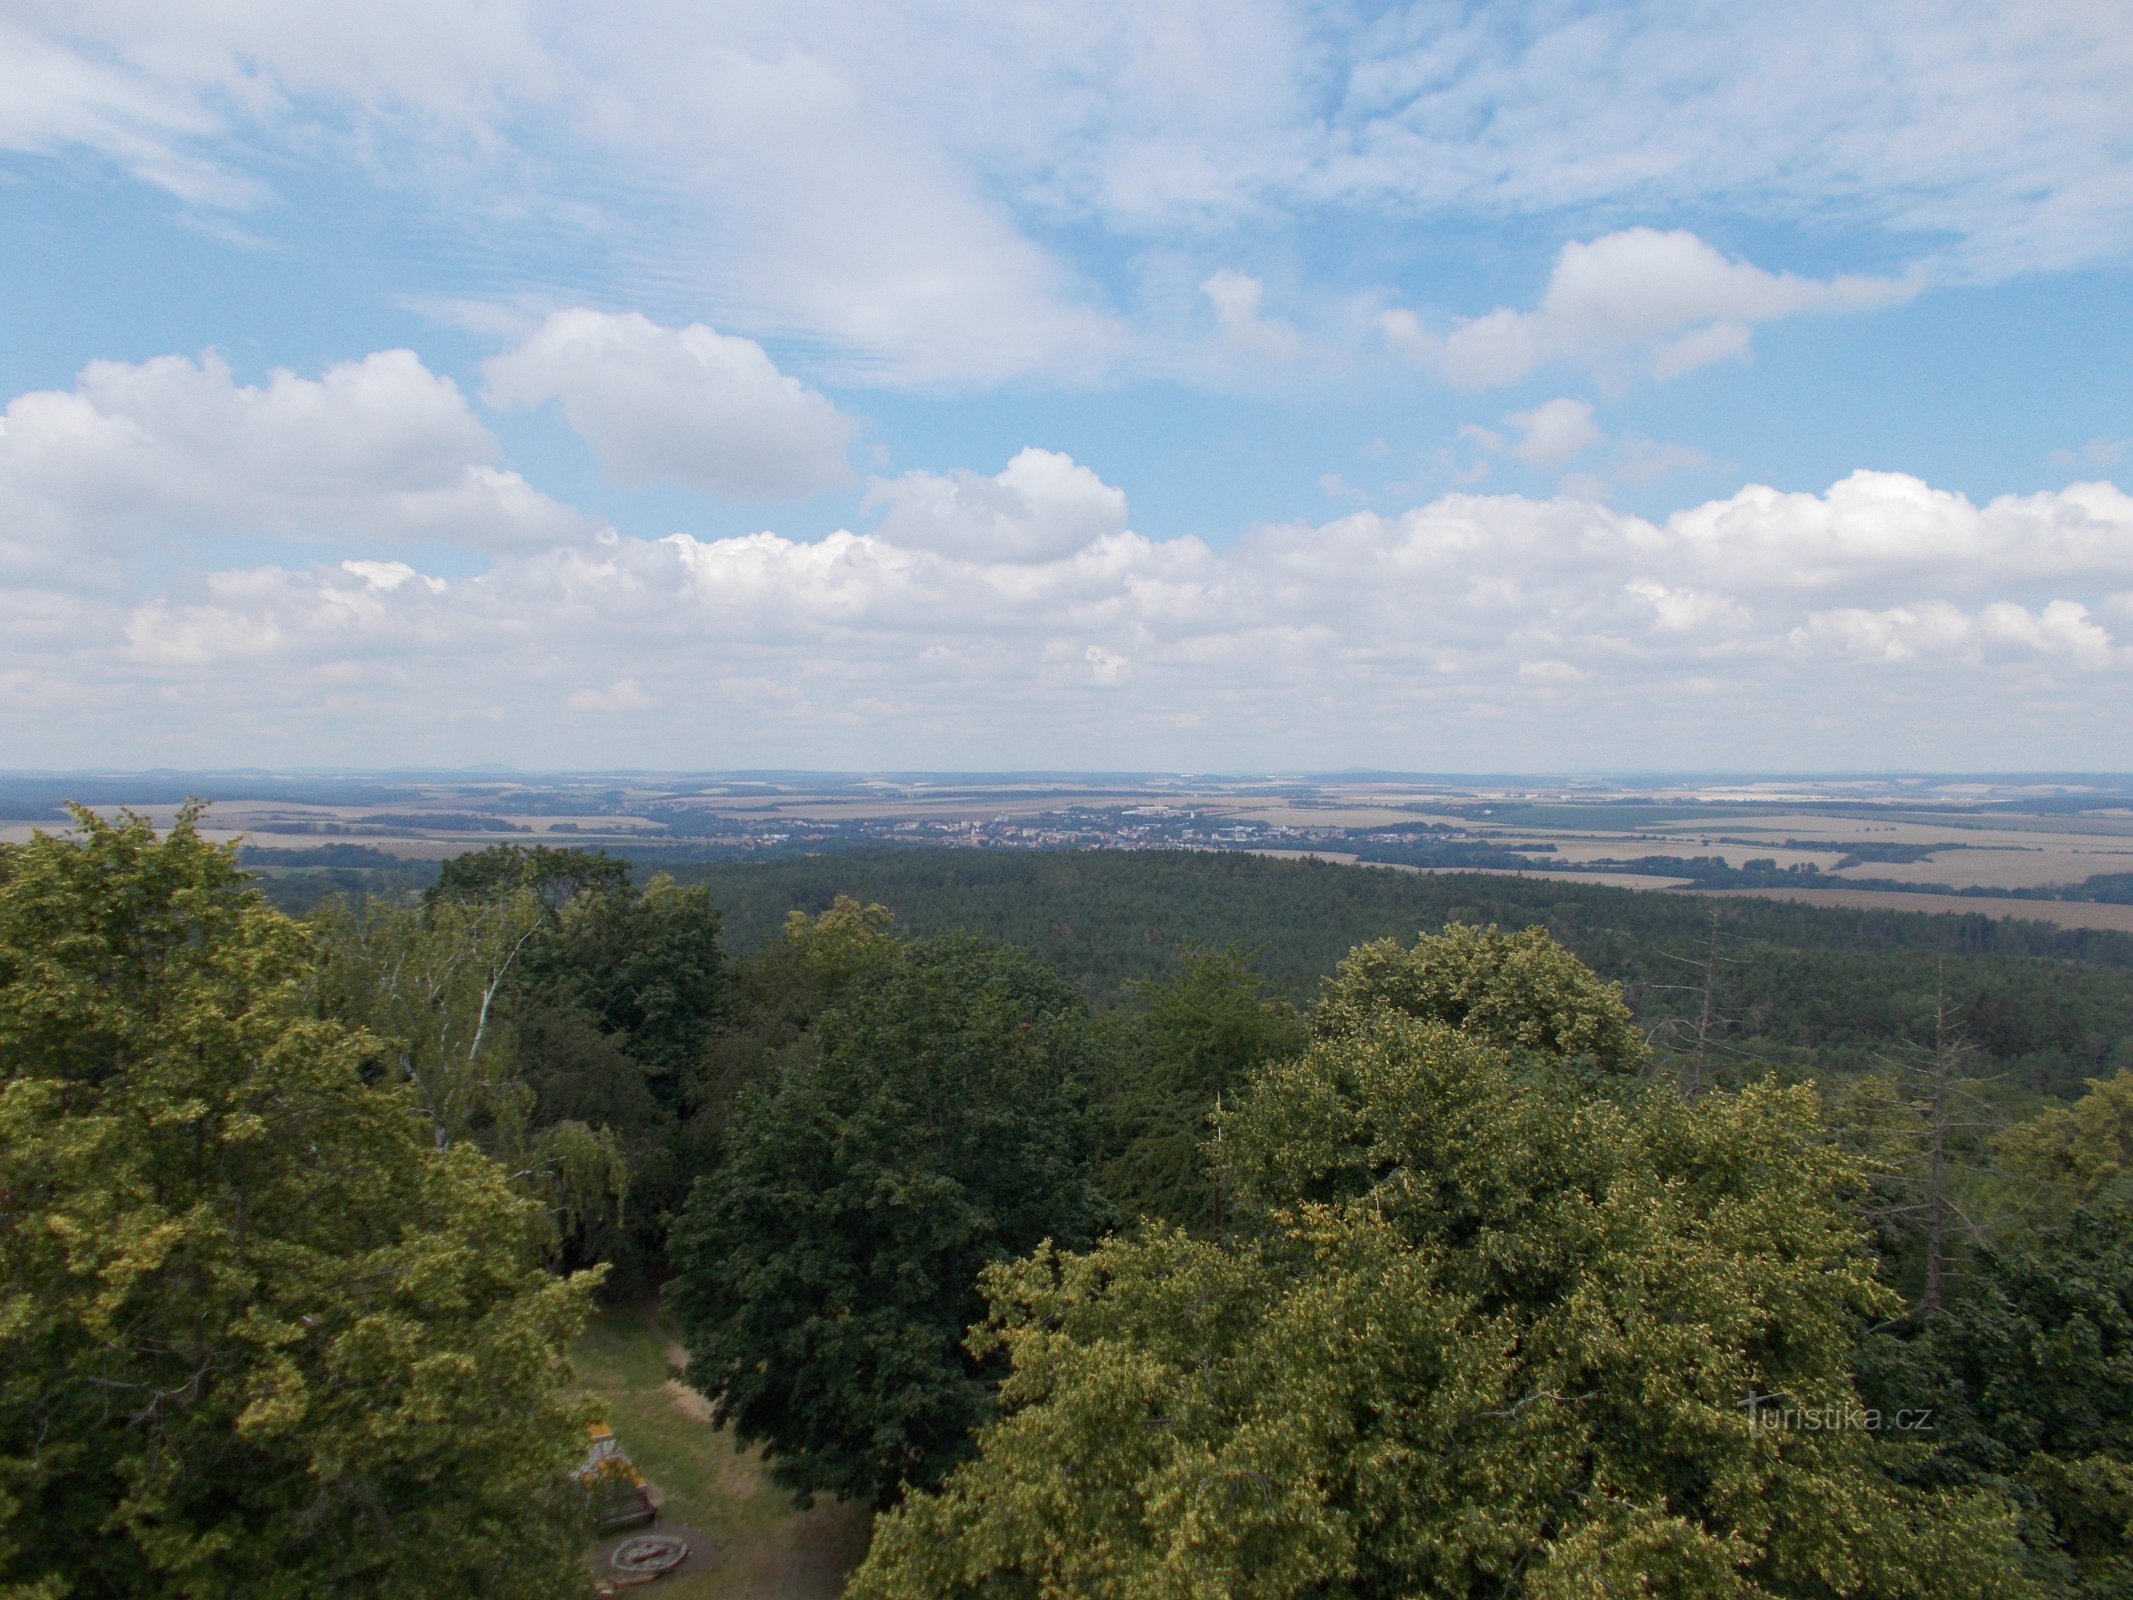 View from the tower on Křížové vrch